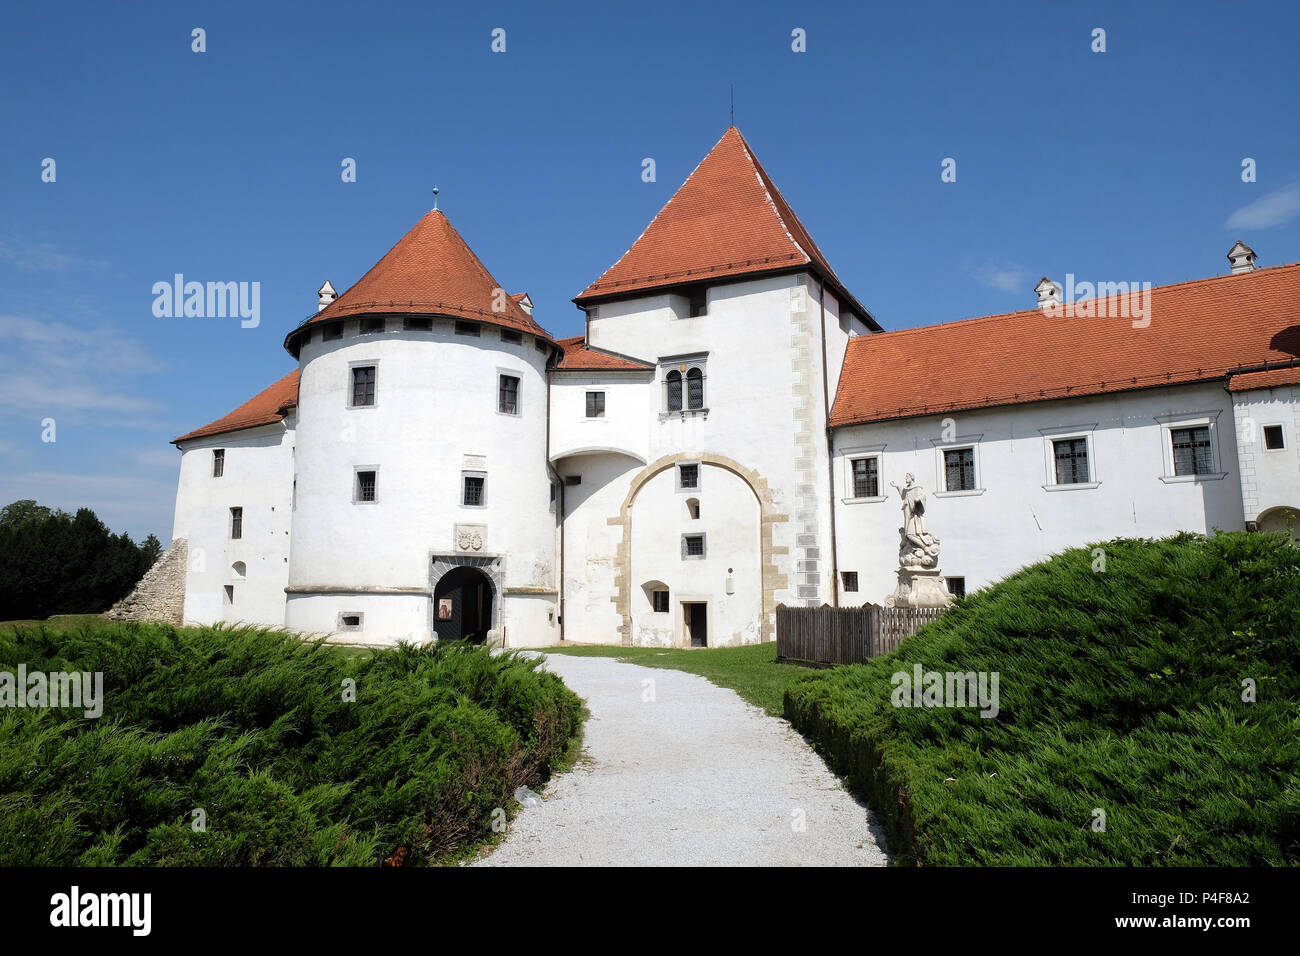 Varazdin castle in the Old Town, originally built in the 13th century in Varazdin, Croatia Stock Photo